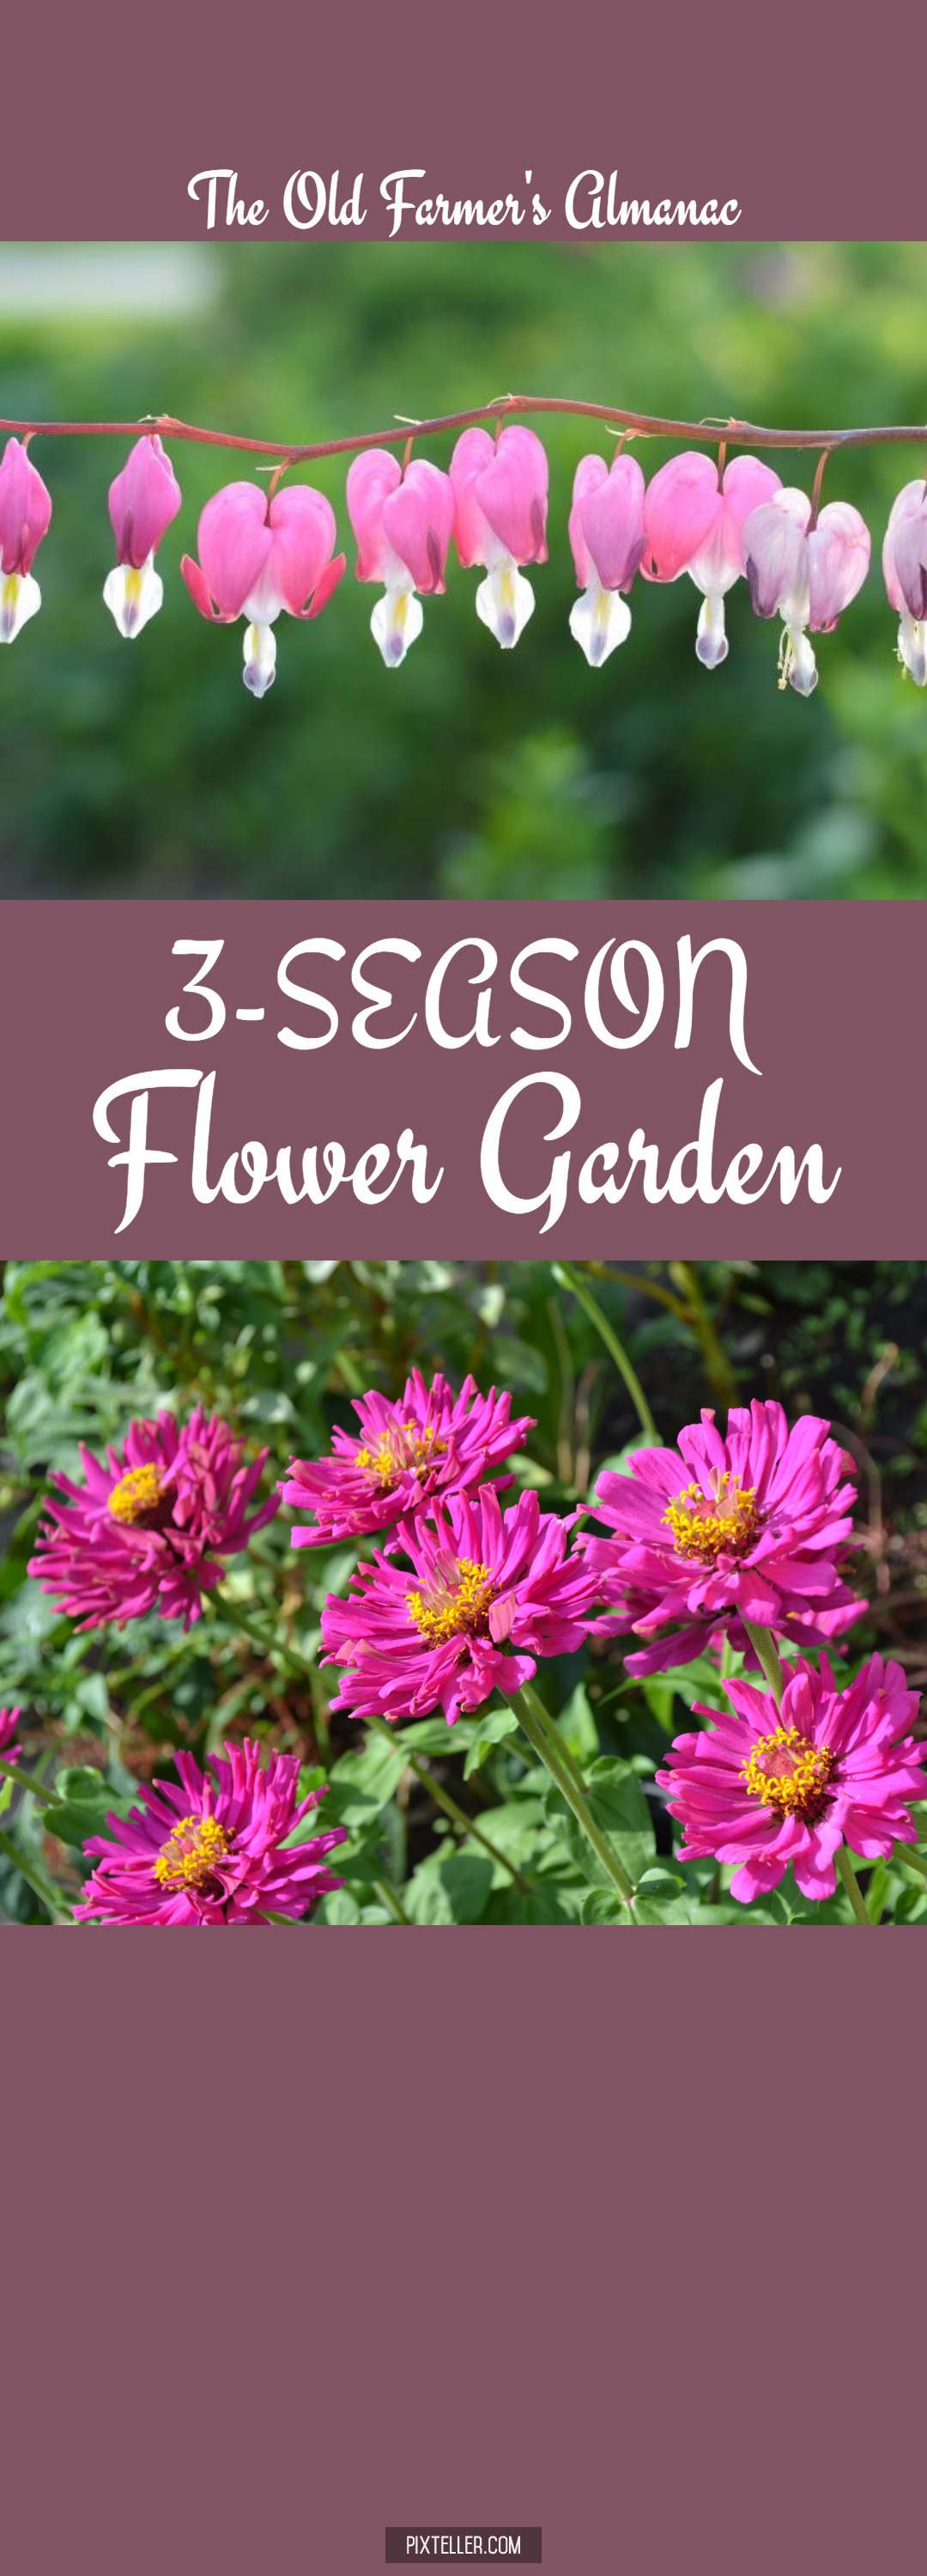 OFA 5-9-17 3-season garden Design 